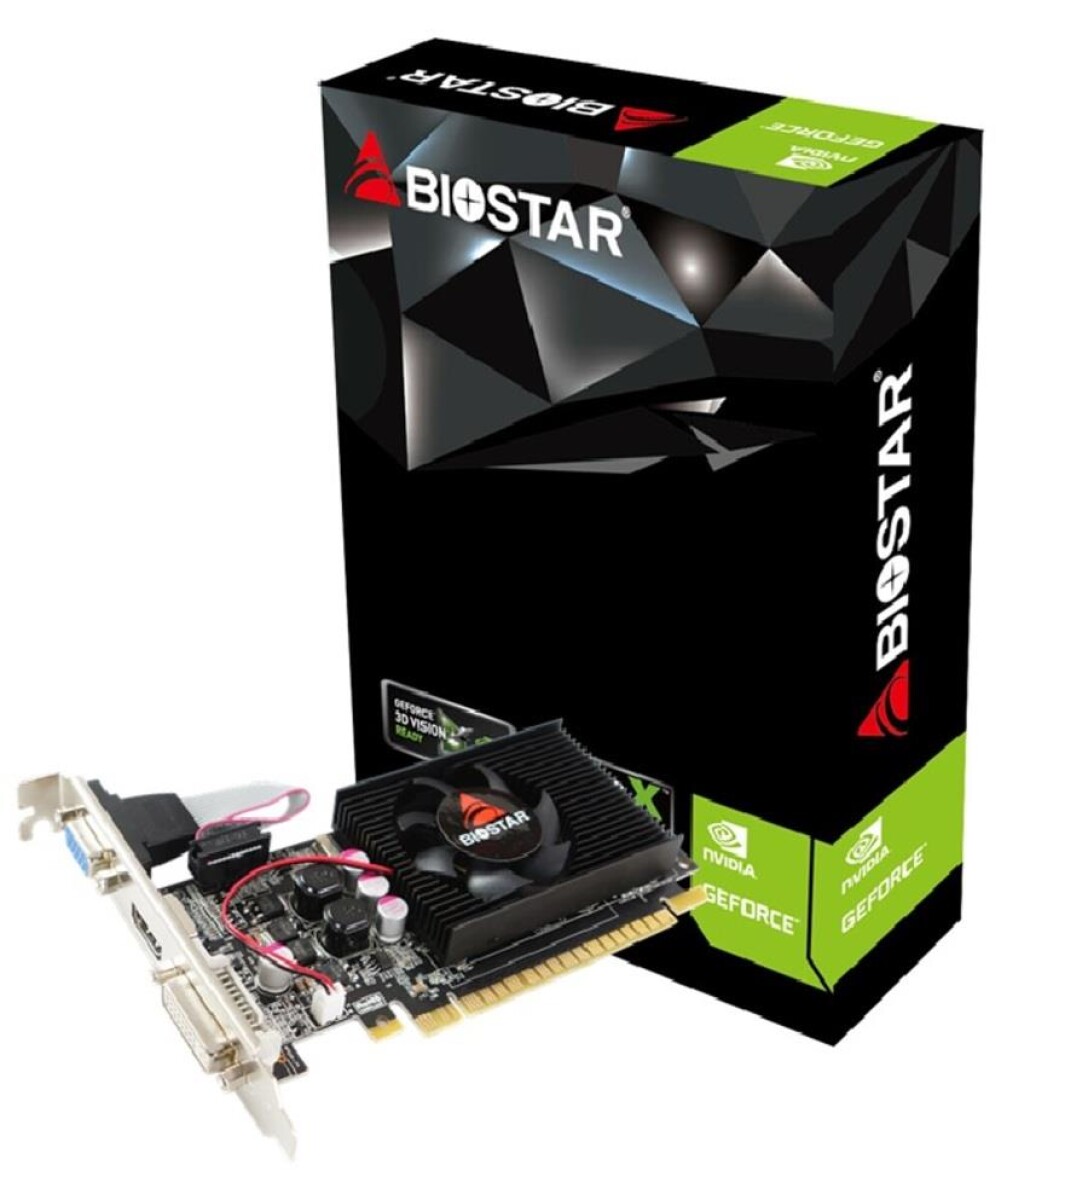 Tarjeta Video Biostar G210 1GB D3 - 001 